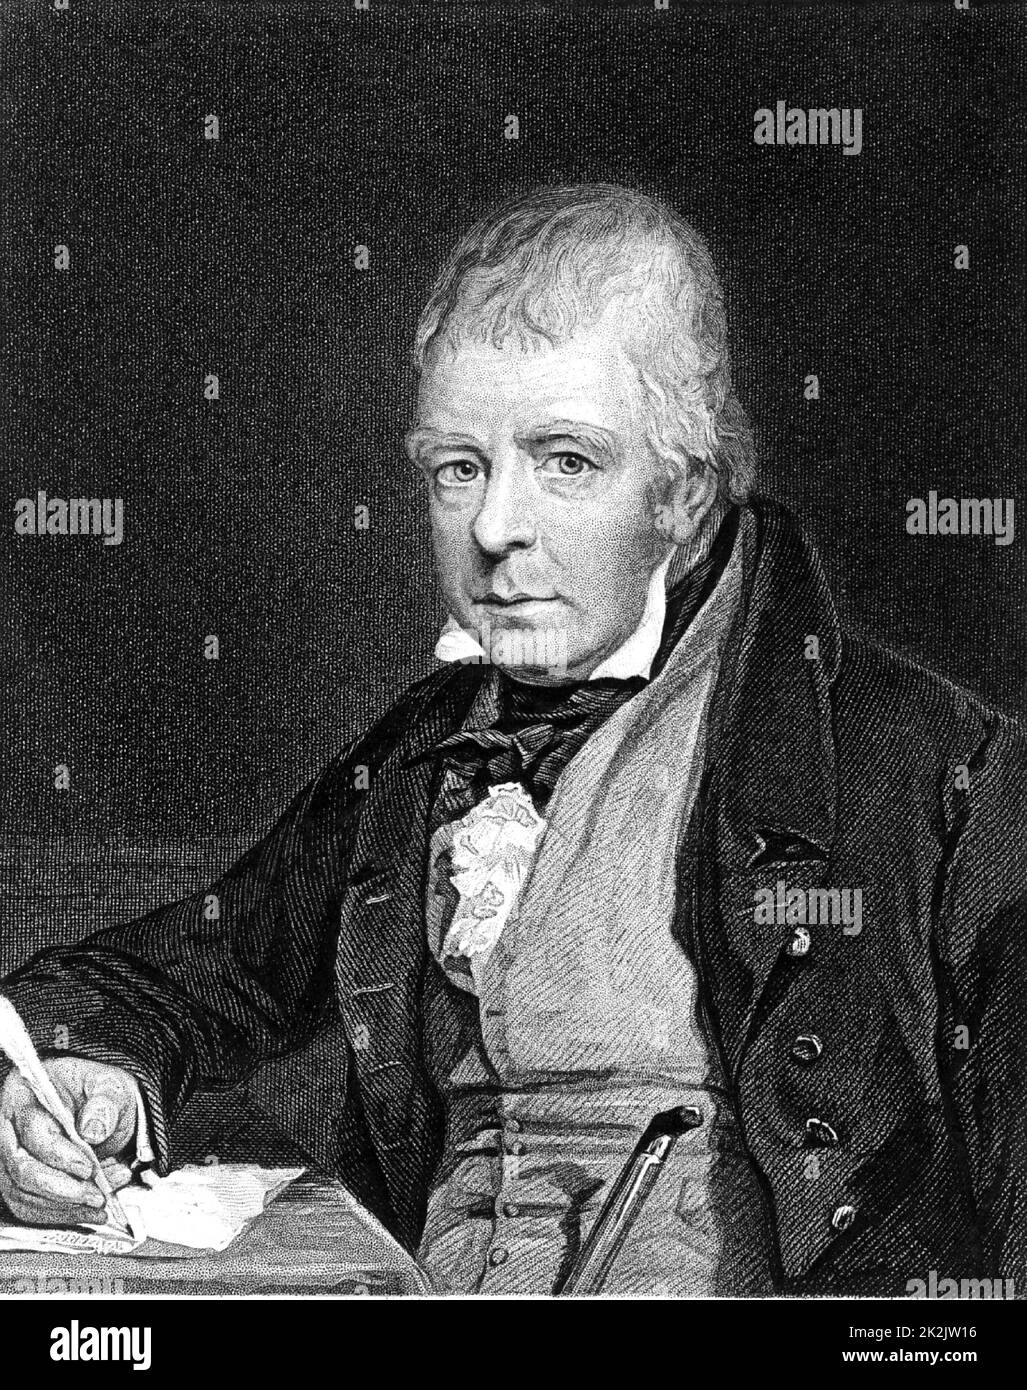 Walter Scott (1771-1832) schottischer Autor und Dichter. Am besten für seine historischen Romane Waverley gedacht. Gravur nach dem Porträt von John Prescott Knight (1803-1881) aus "Das weltweit große Männer' (London, c 1870). Stockfoto